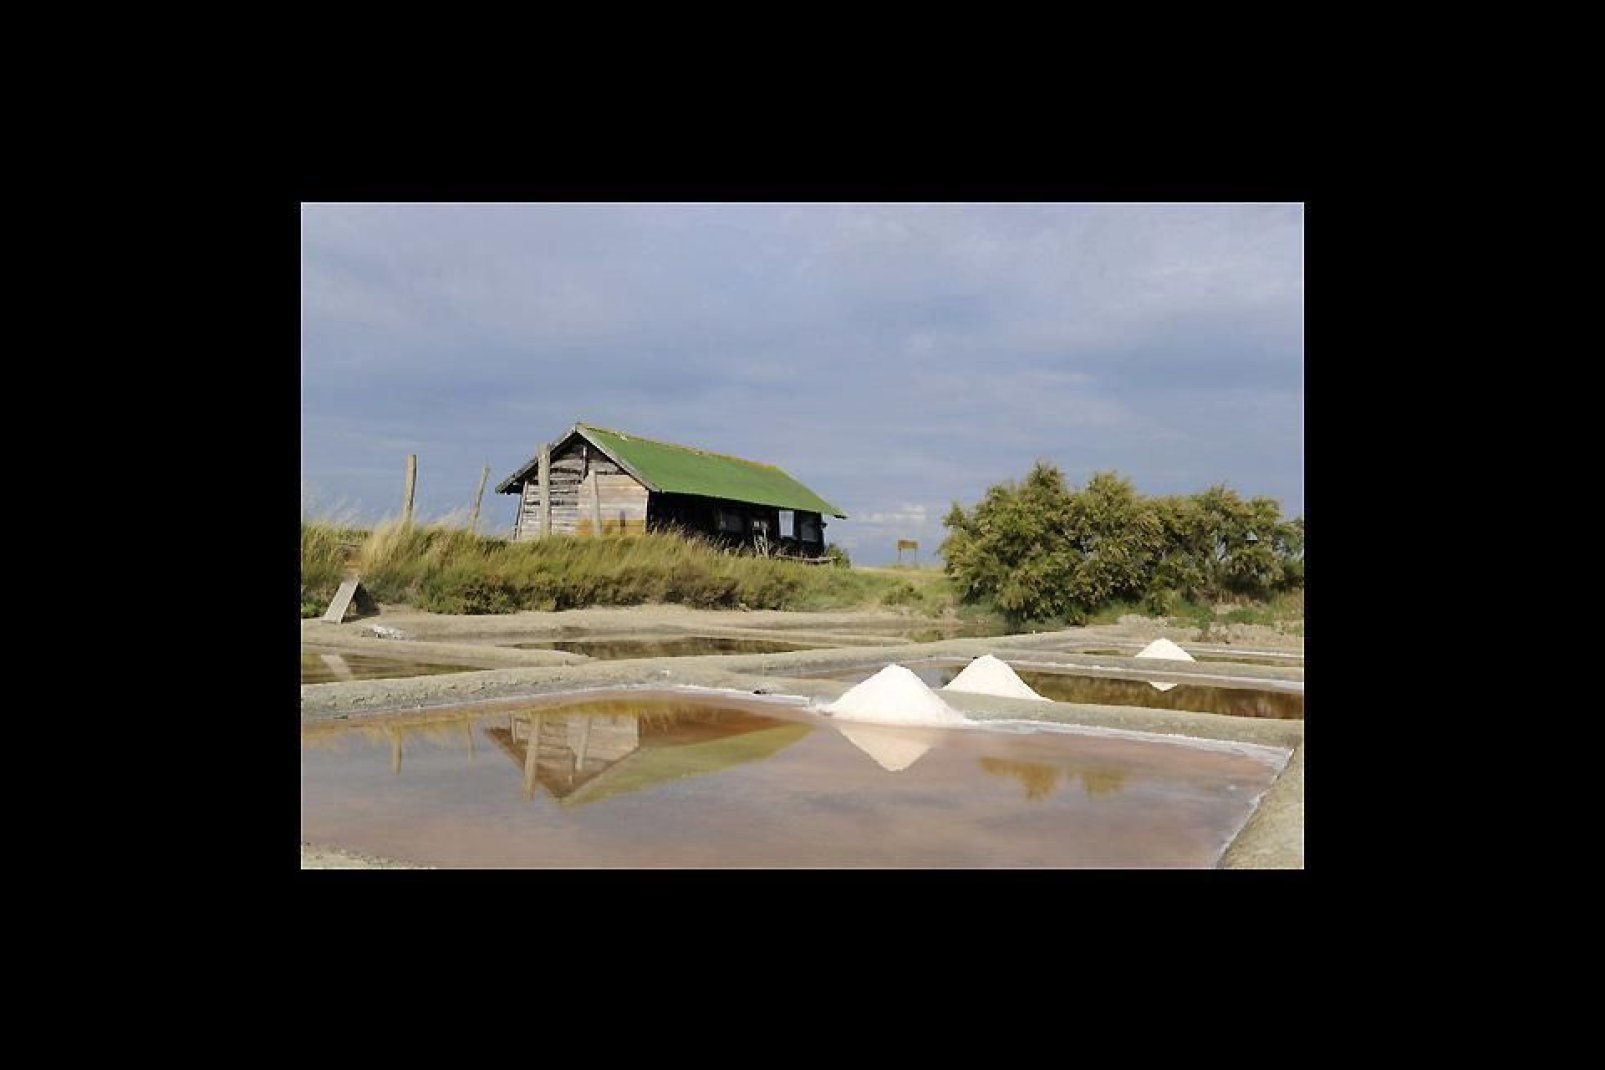 A pocos kilómetros al norte de la ciudad, las salinas son una zona natural protegida en la que podrás ver cómo los salineros extraen la sal.